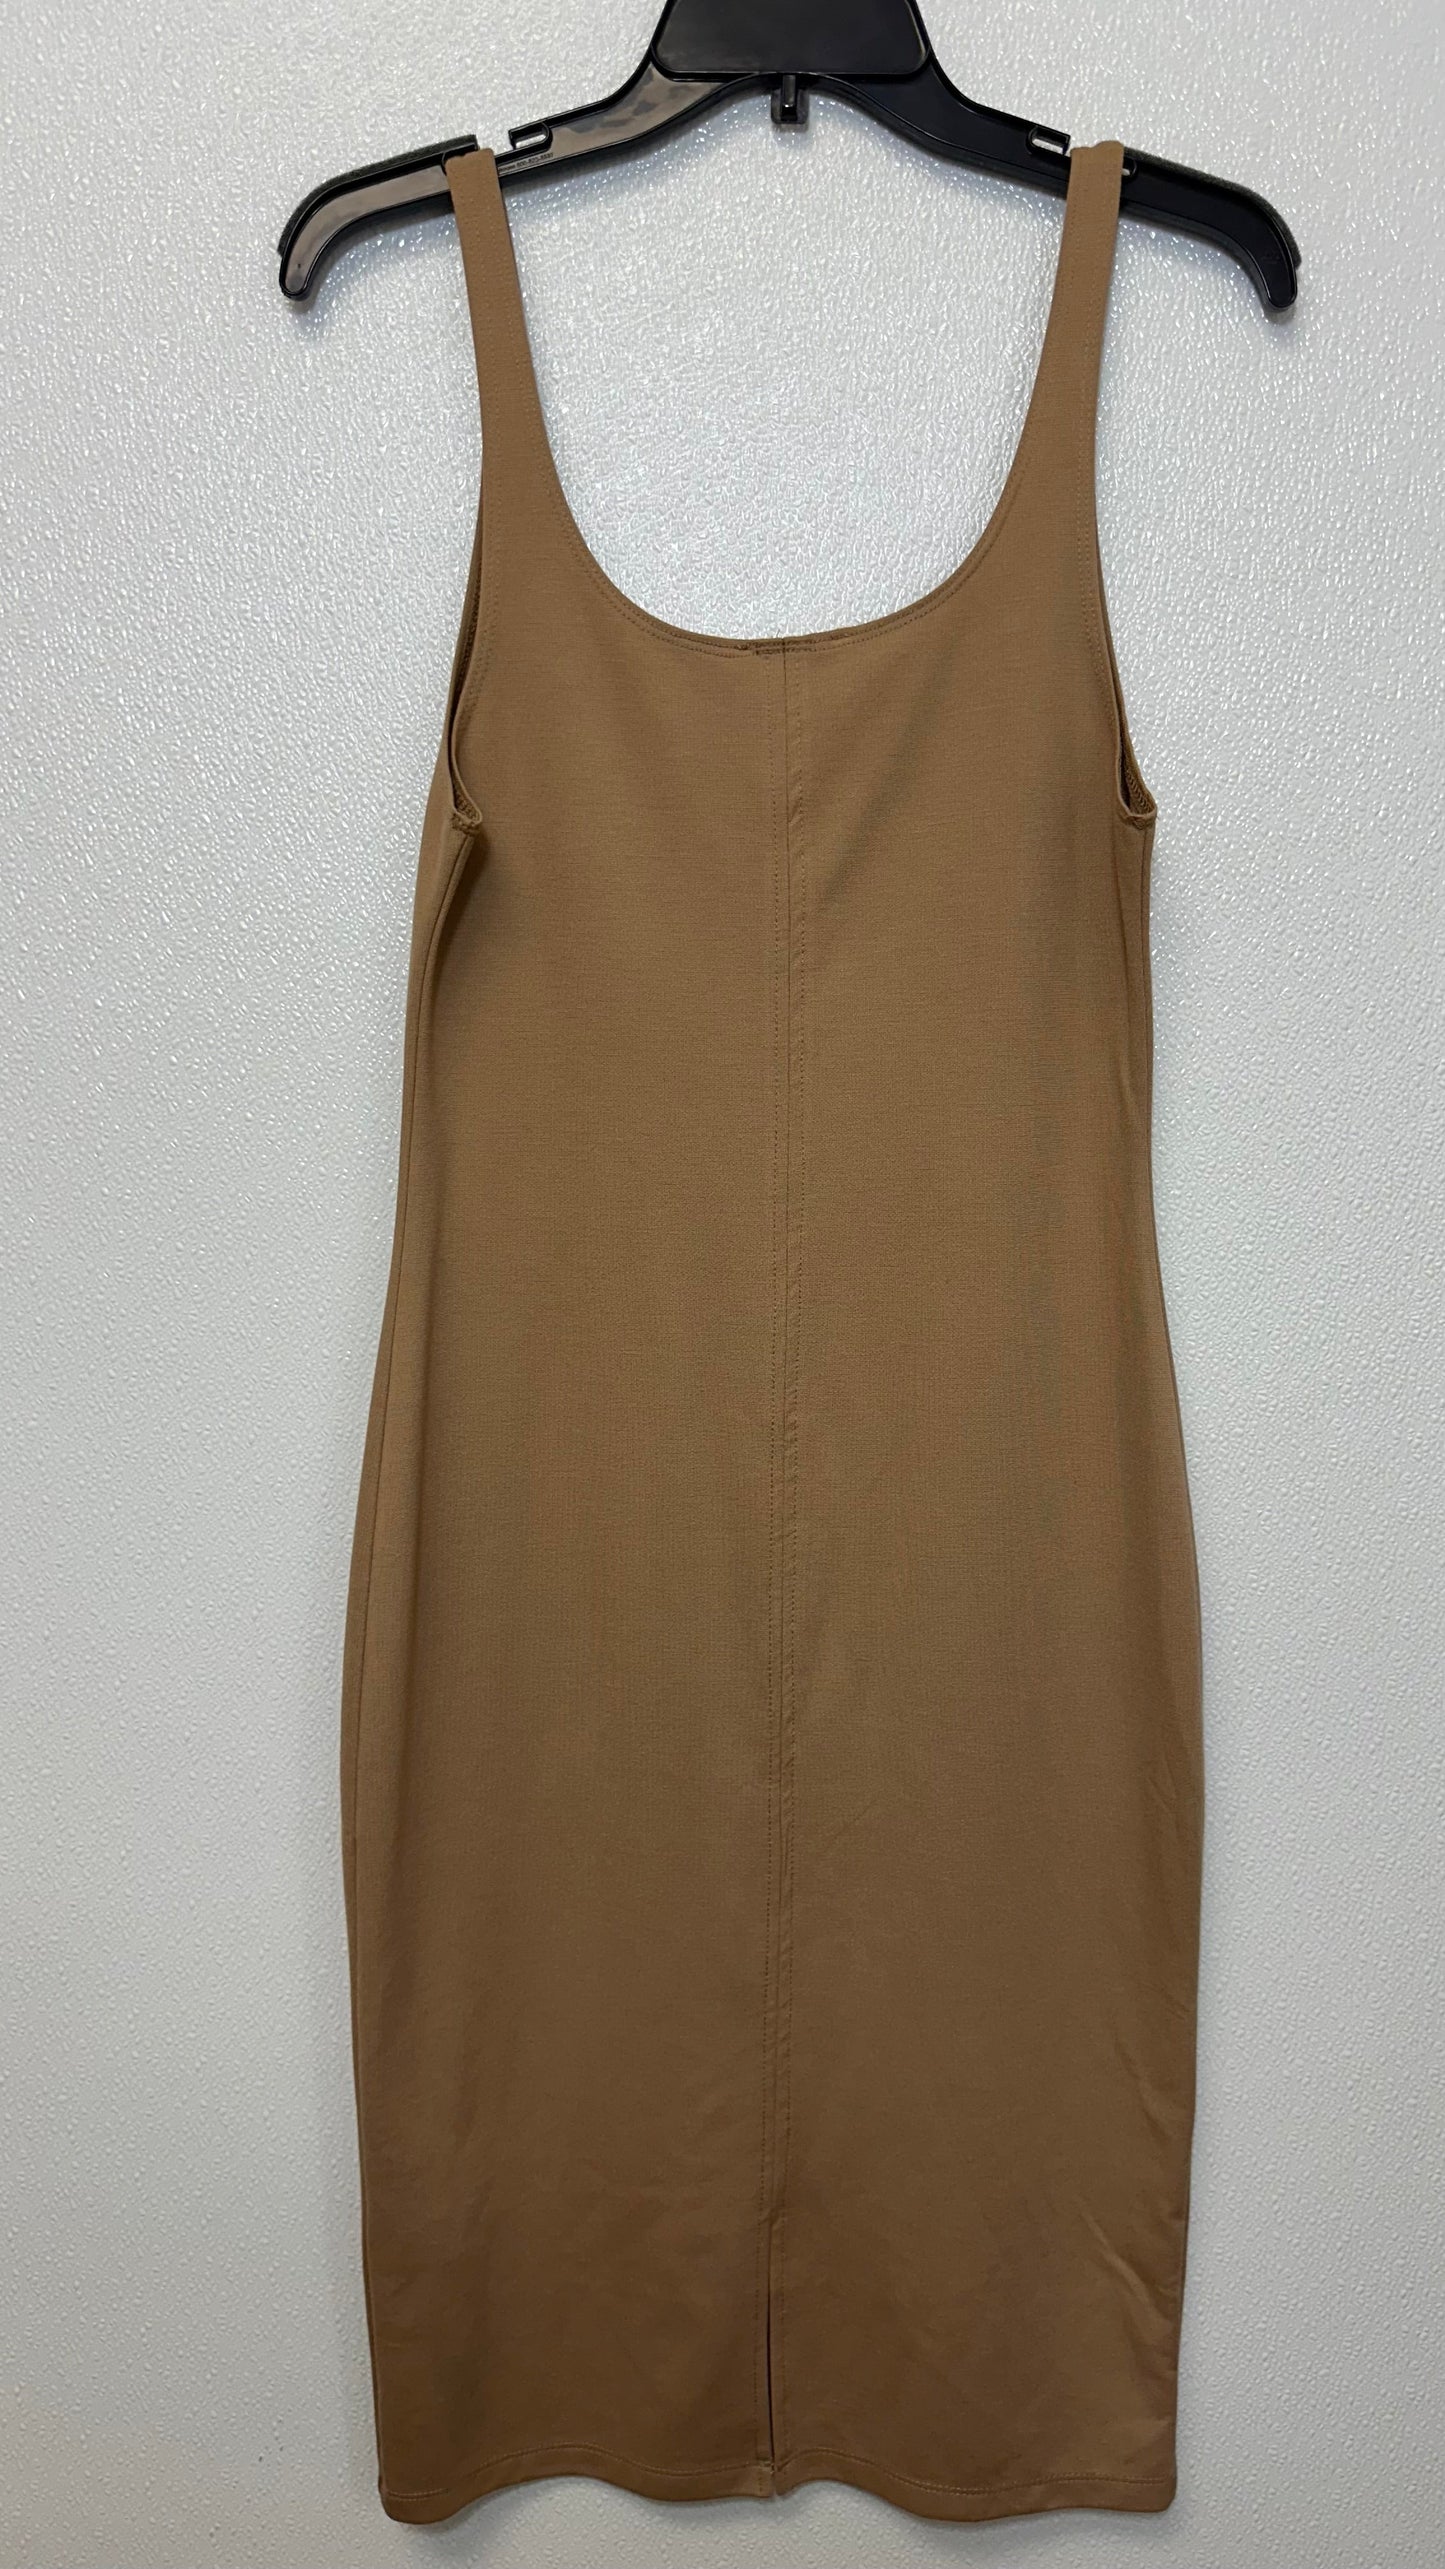 Dress Casual Maxi By Zara Basic  Size: Xl